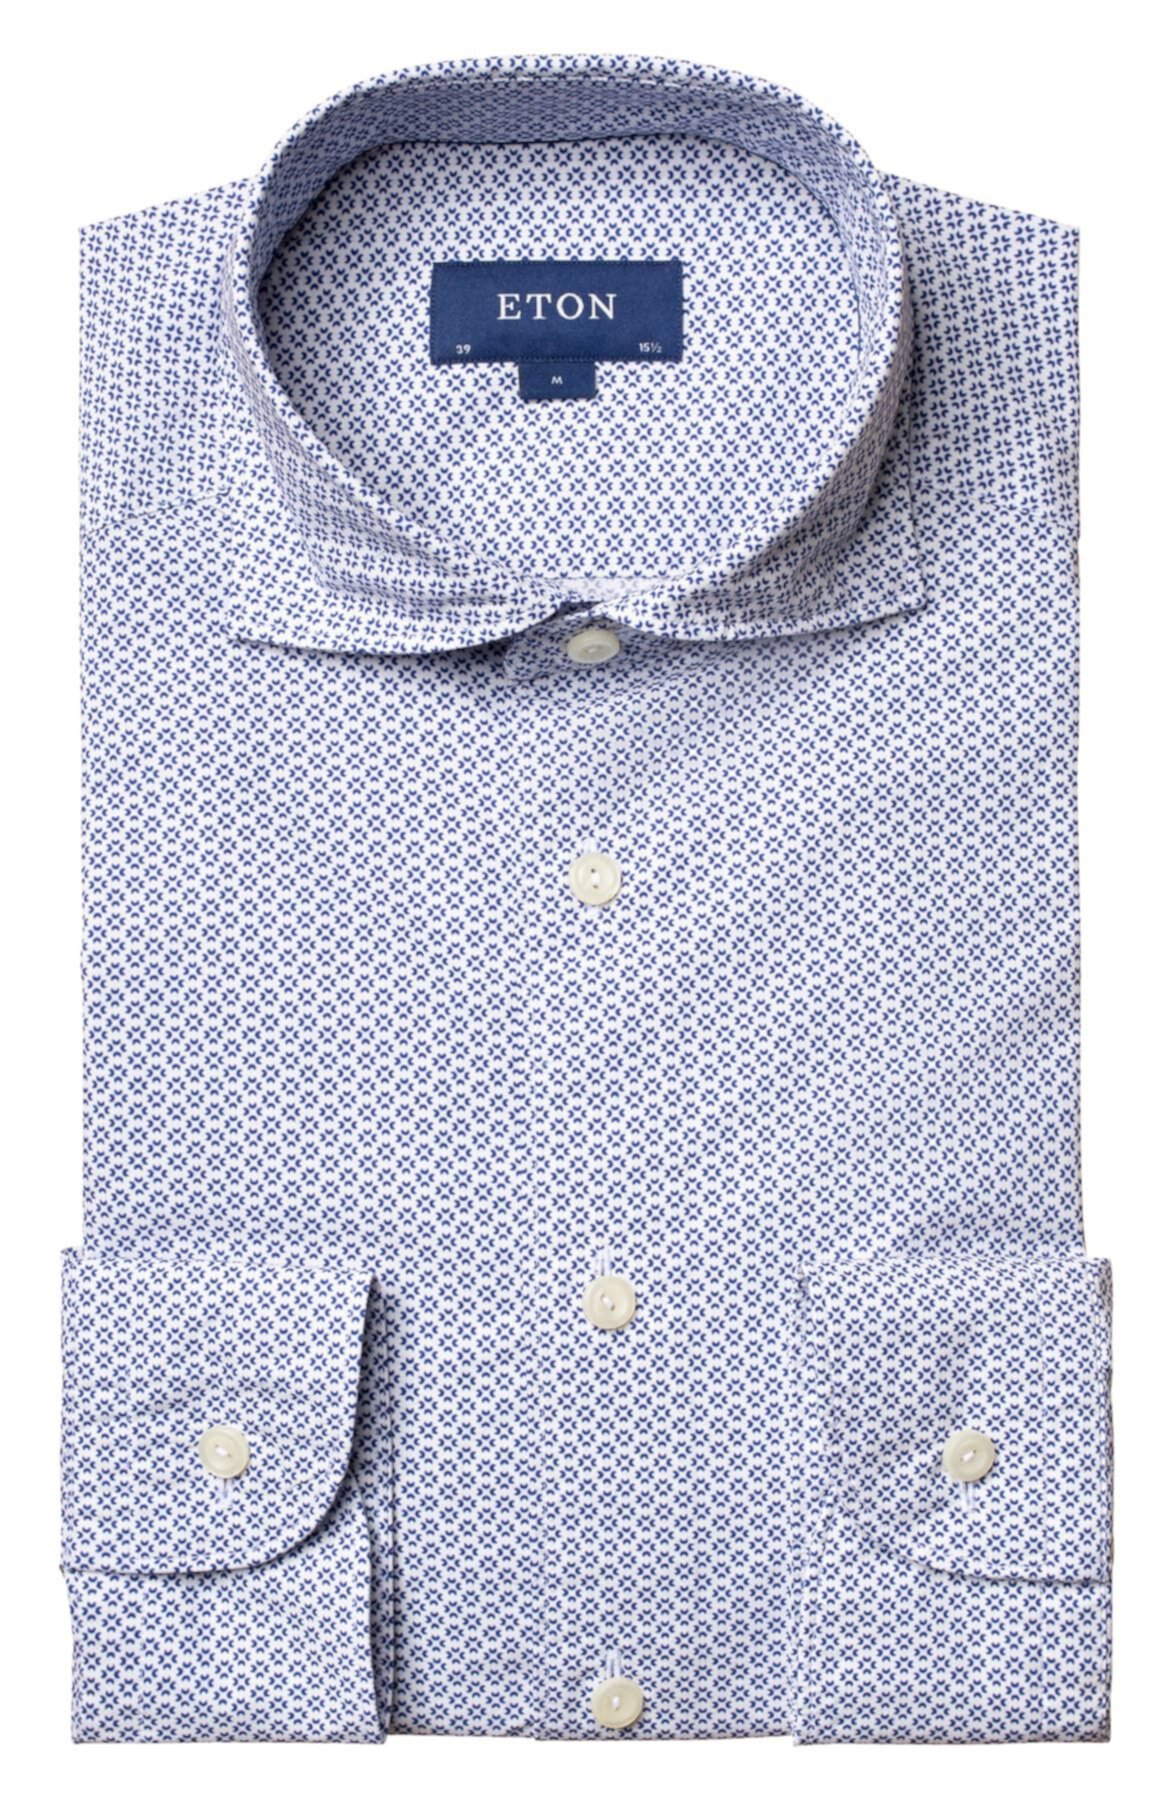 Современная классическая рубашка с аккуратным цветочным принтом Eton